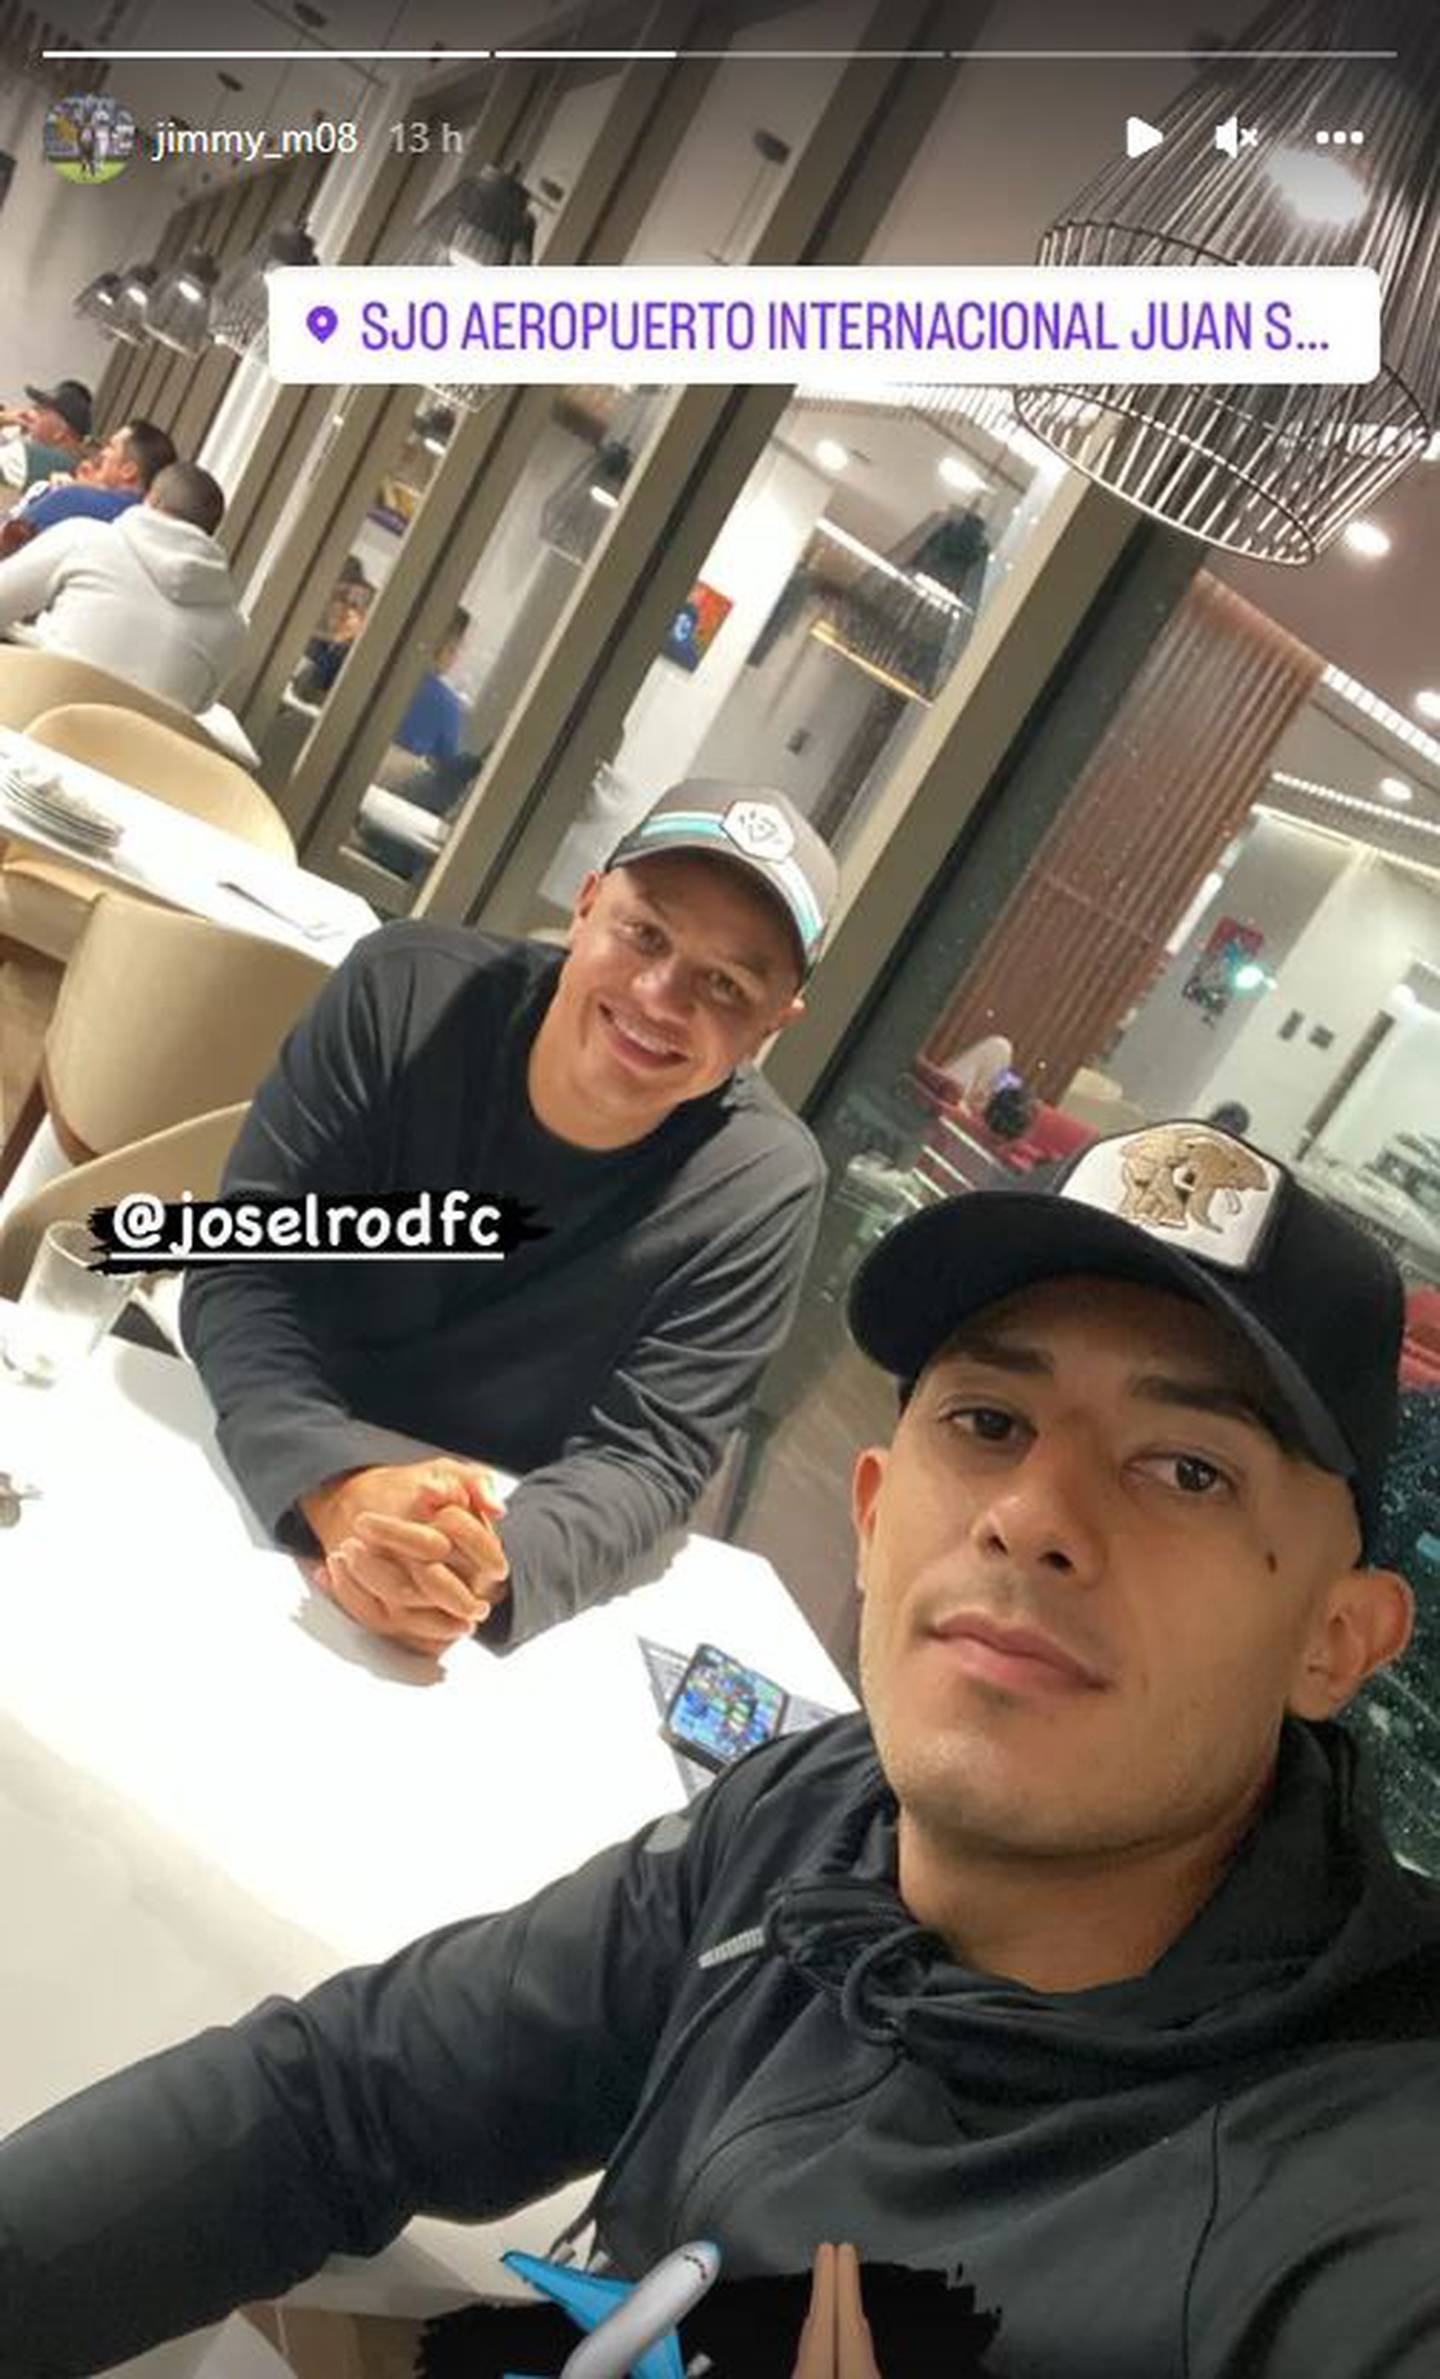 Jimmy viajó con su representante, José Luis Rodríguez. Instagram.